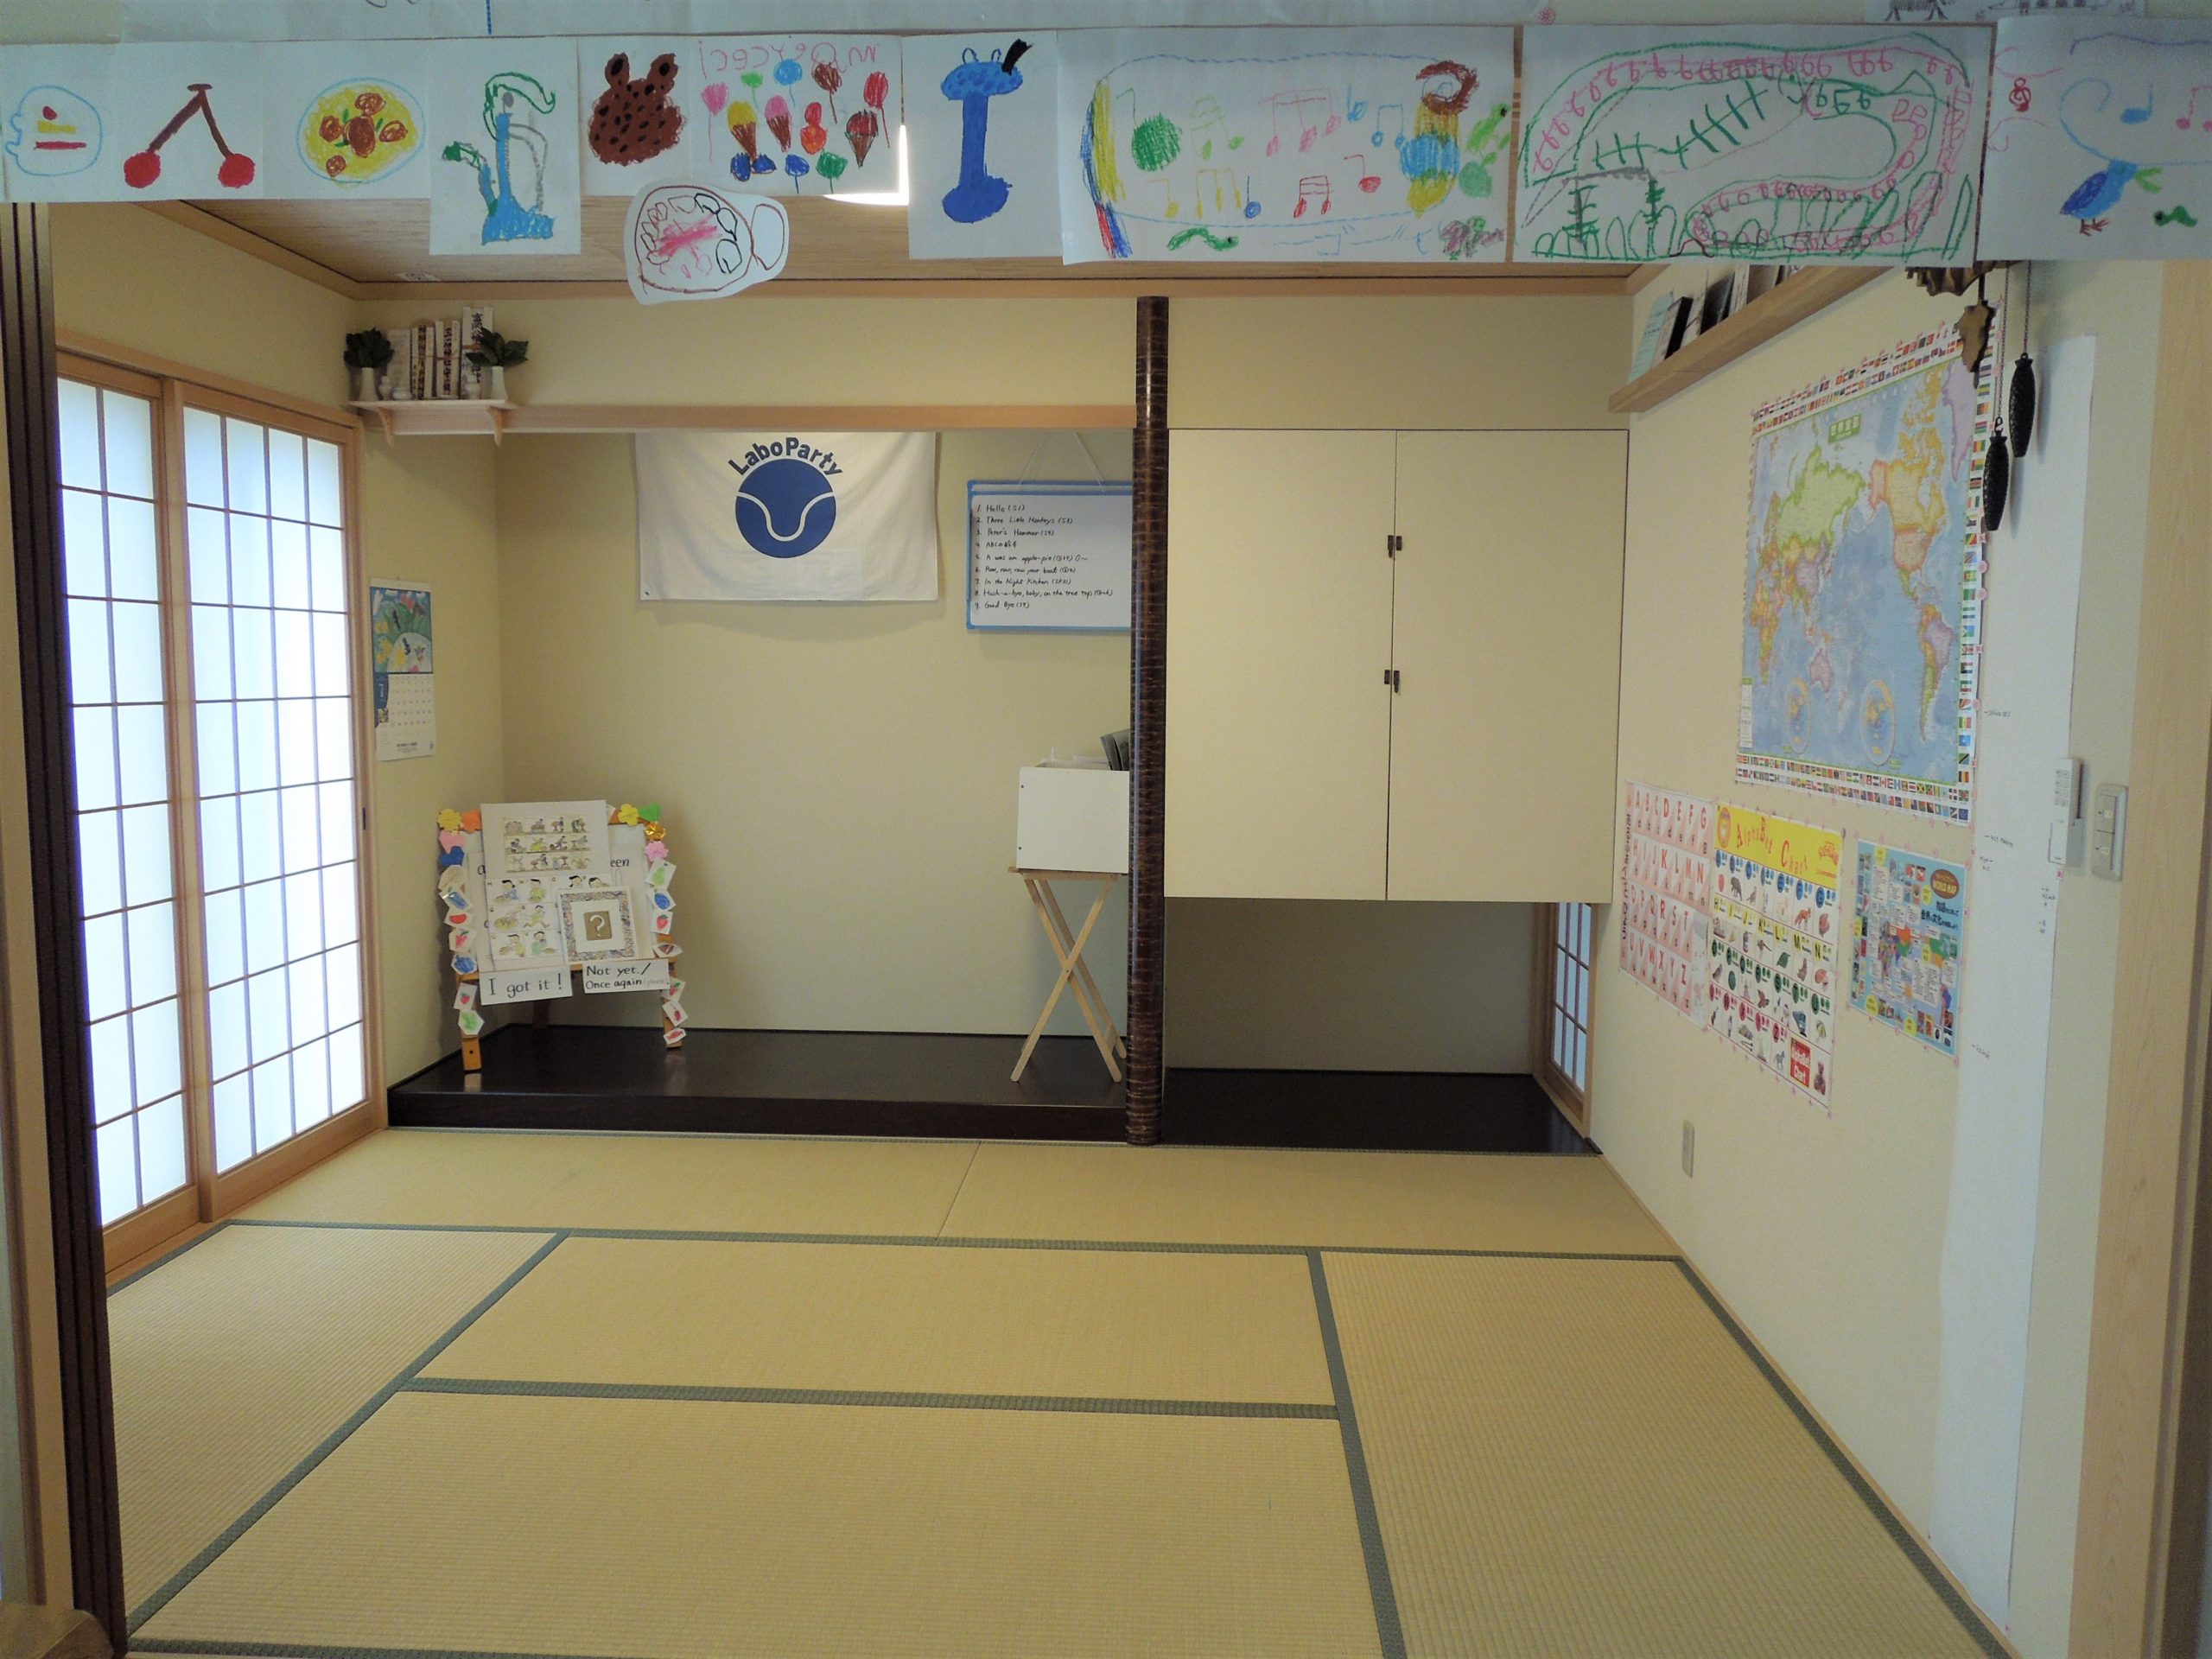 ラボ・パーティ 神戸市垂水区星陵台教室(木村パーティ)の雰囲気がわかる写真